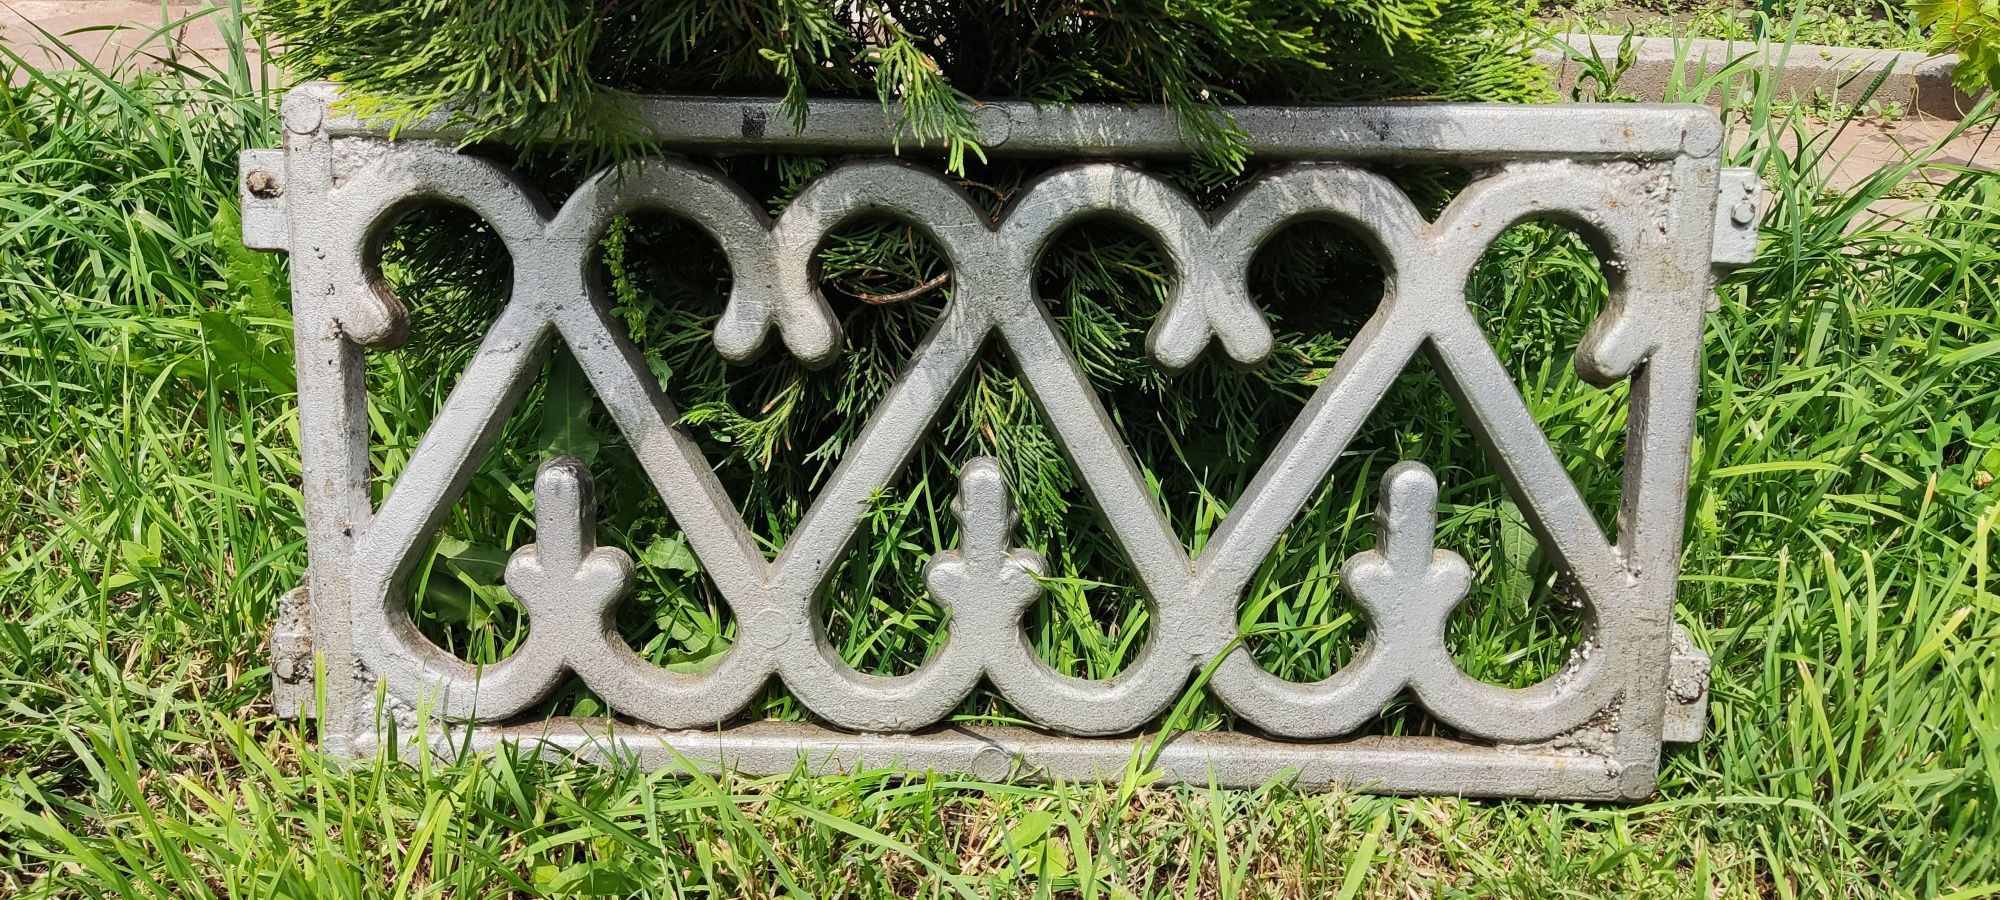 Качественная серебряная оградка из надежного железа